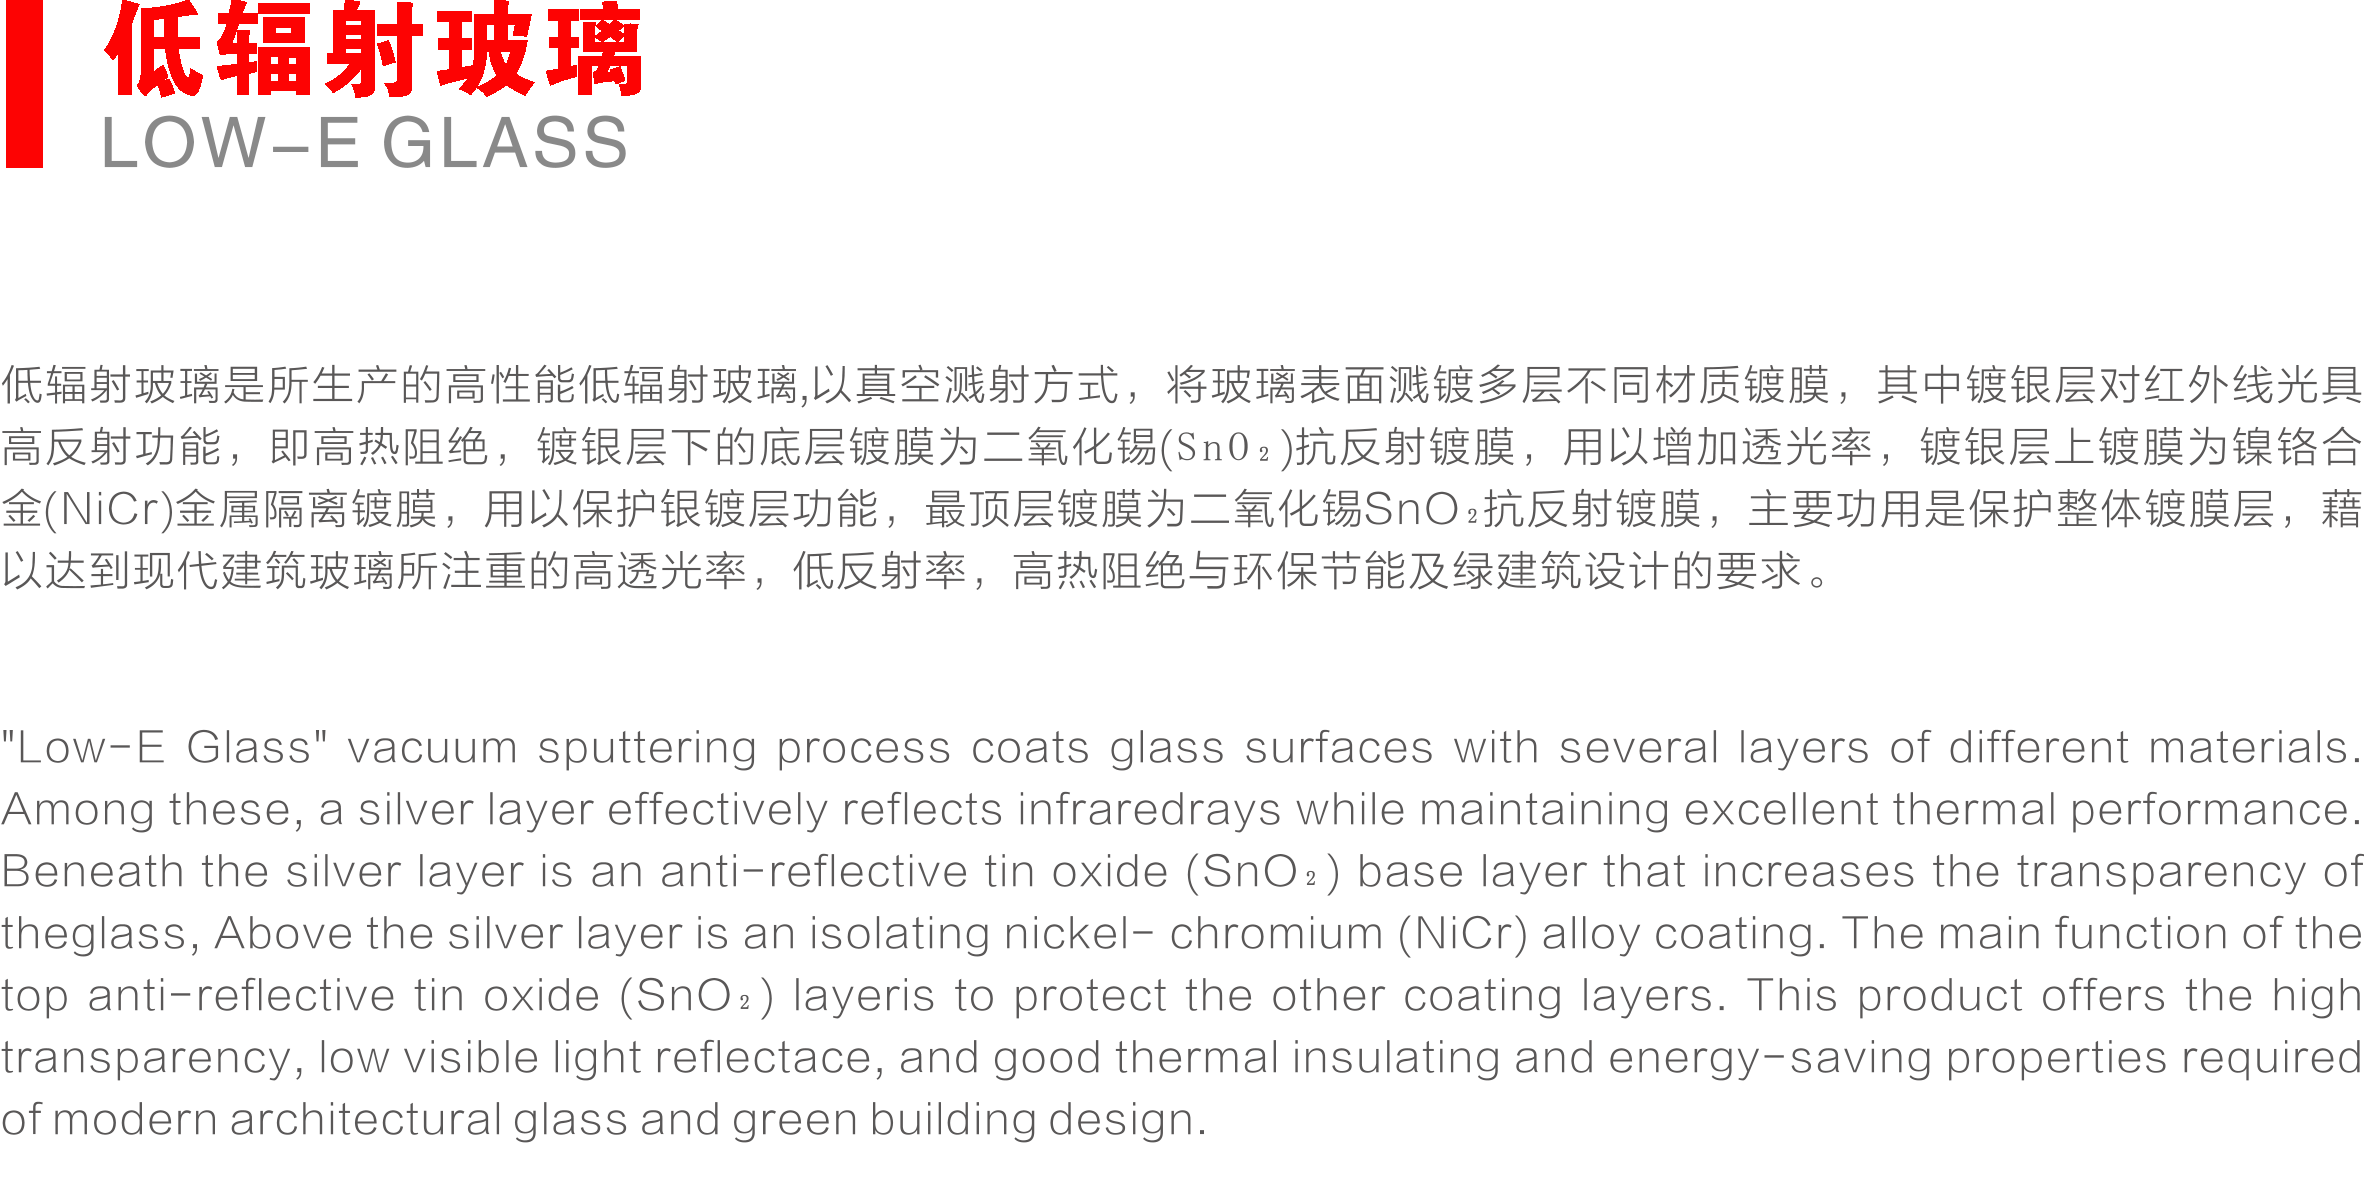 安源玻璃有限公司工程玻璃厂-江西离线low--e玻璃,江西光伏玻璃,江西镀膜玻璃,江西夹层玻璃,江西夹胶玻璃